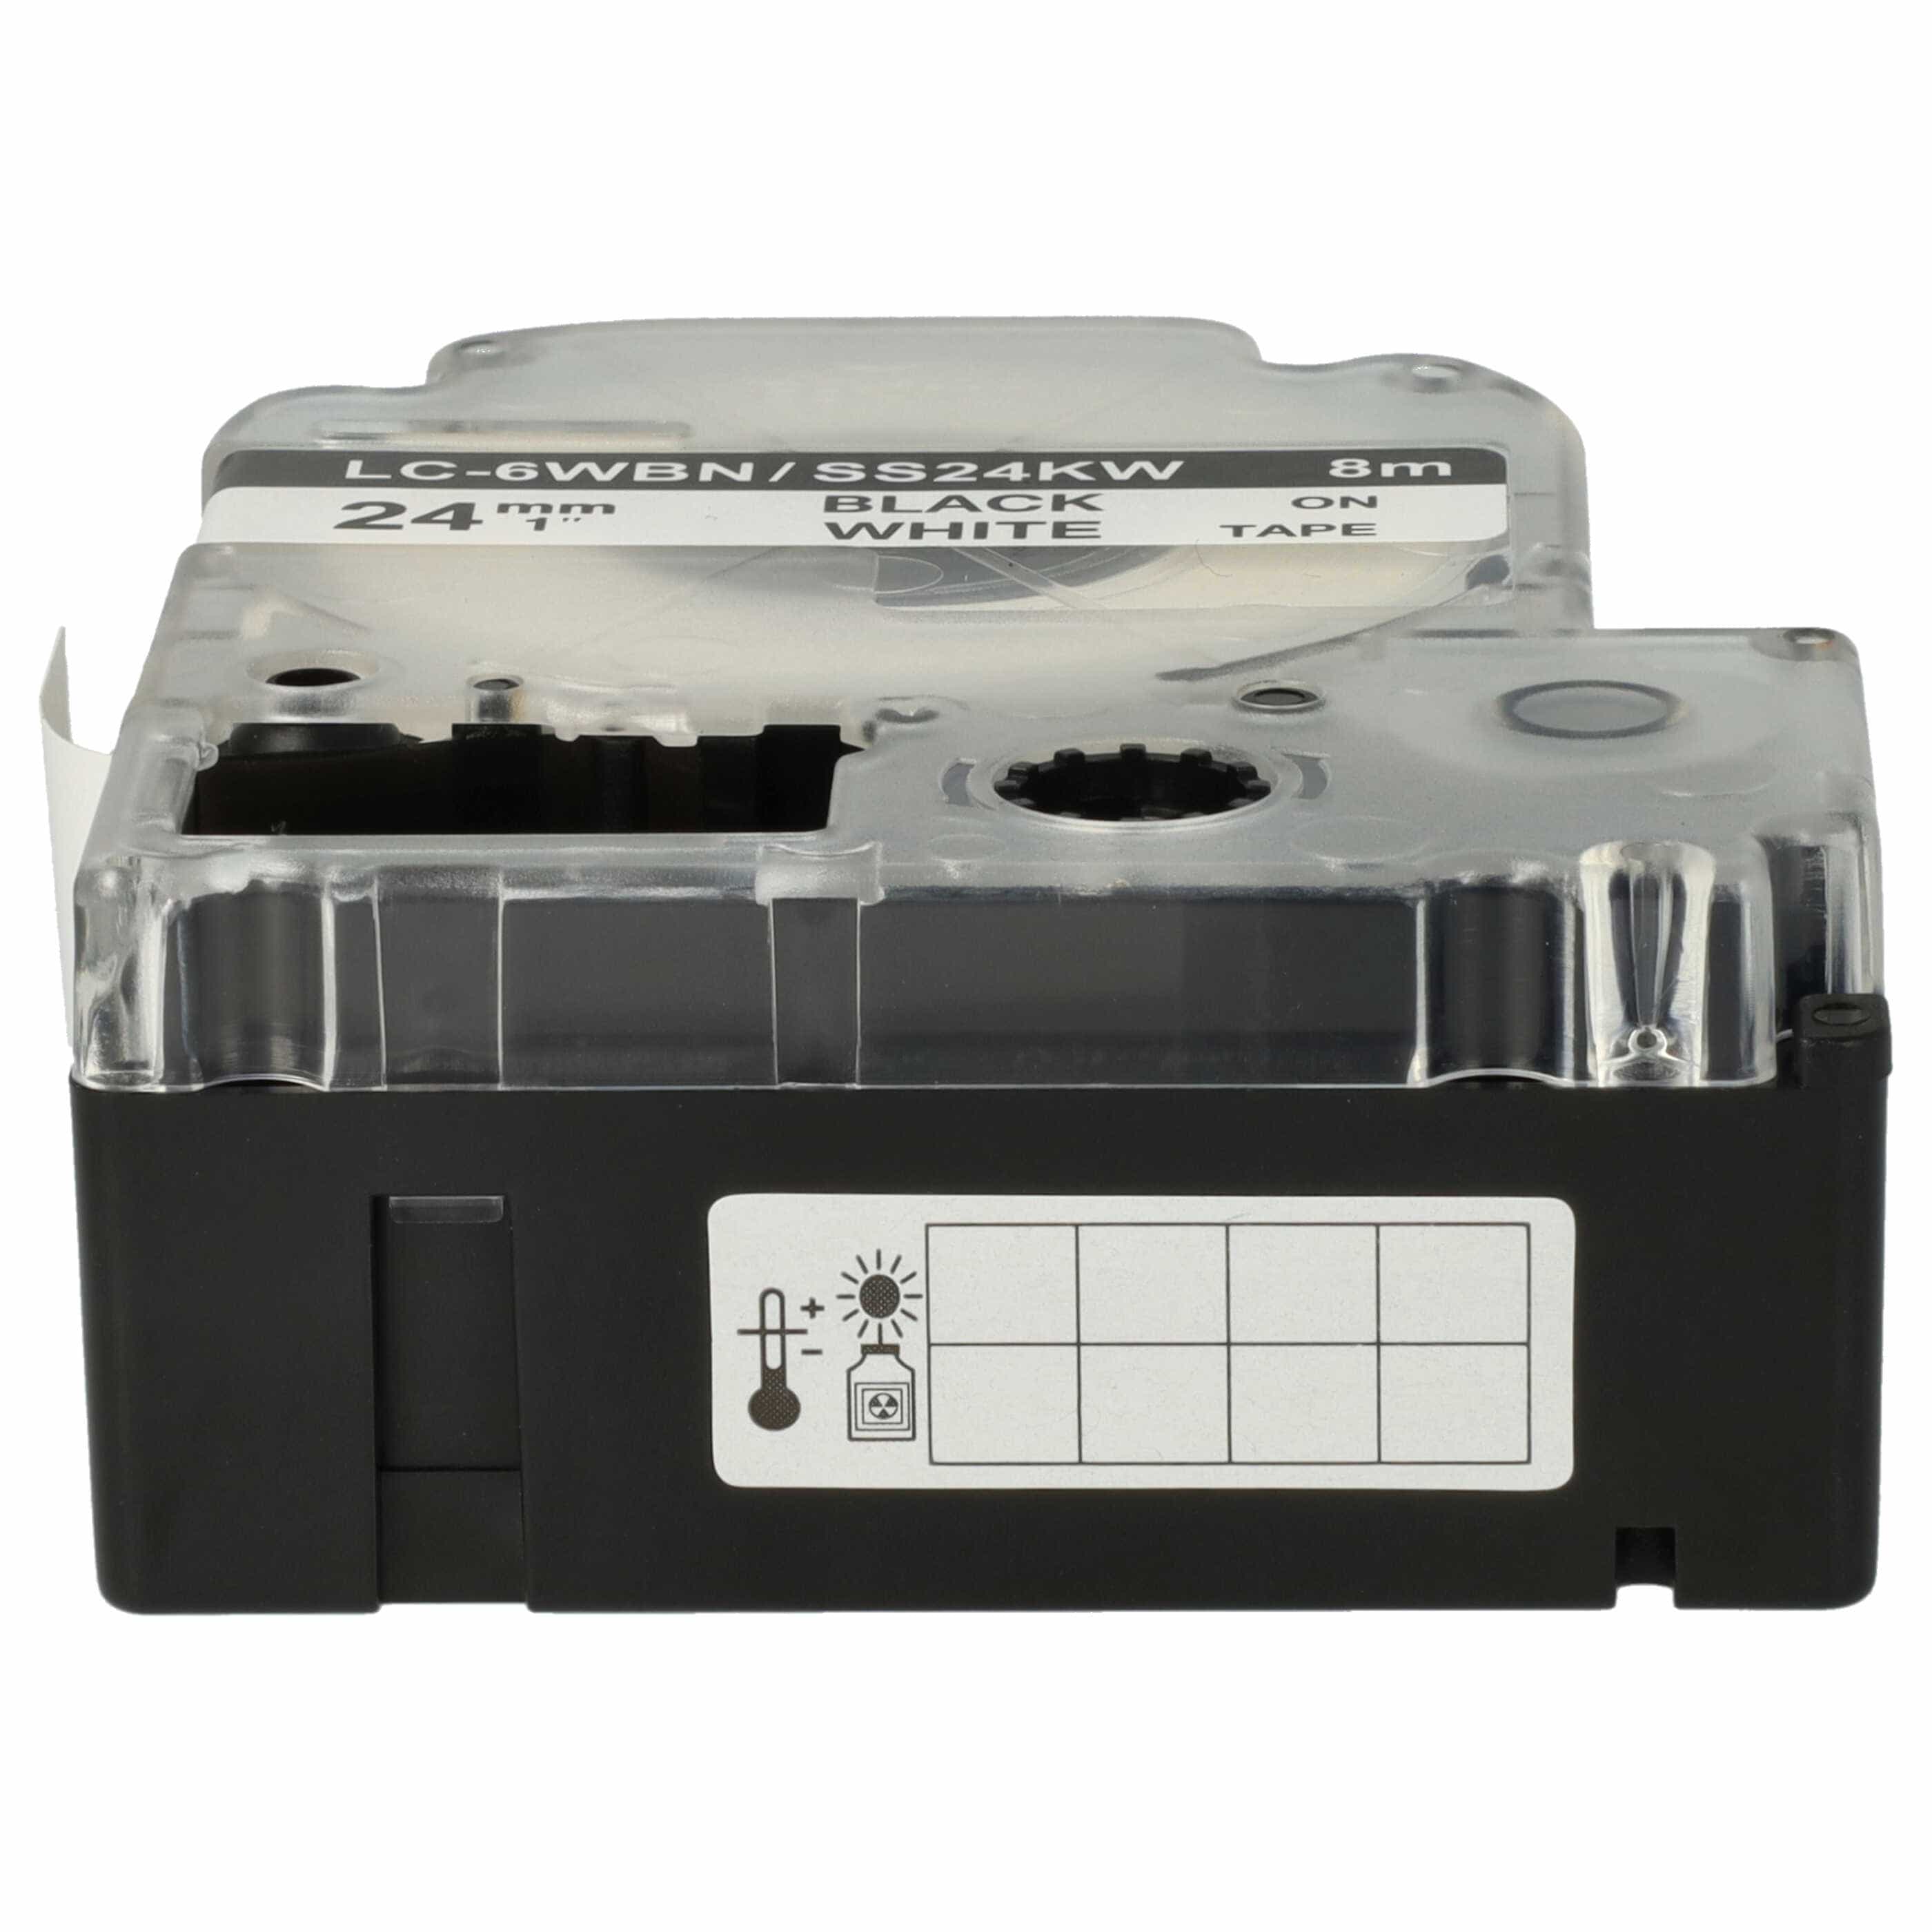 Cassetta nastro sostituisce Epson LC-6WBN per etichettatrice Epson 24mm nero su bianco